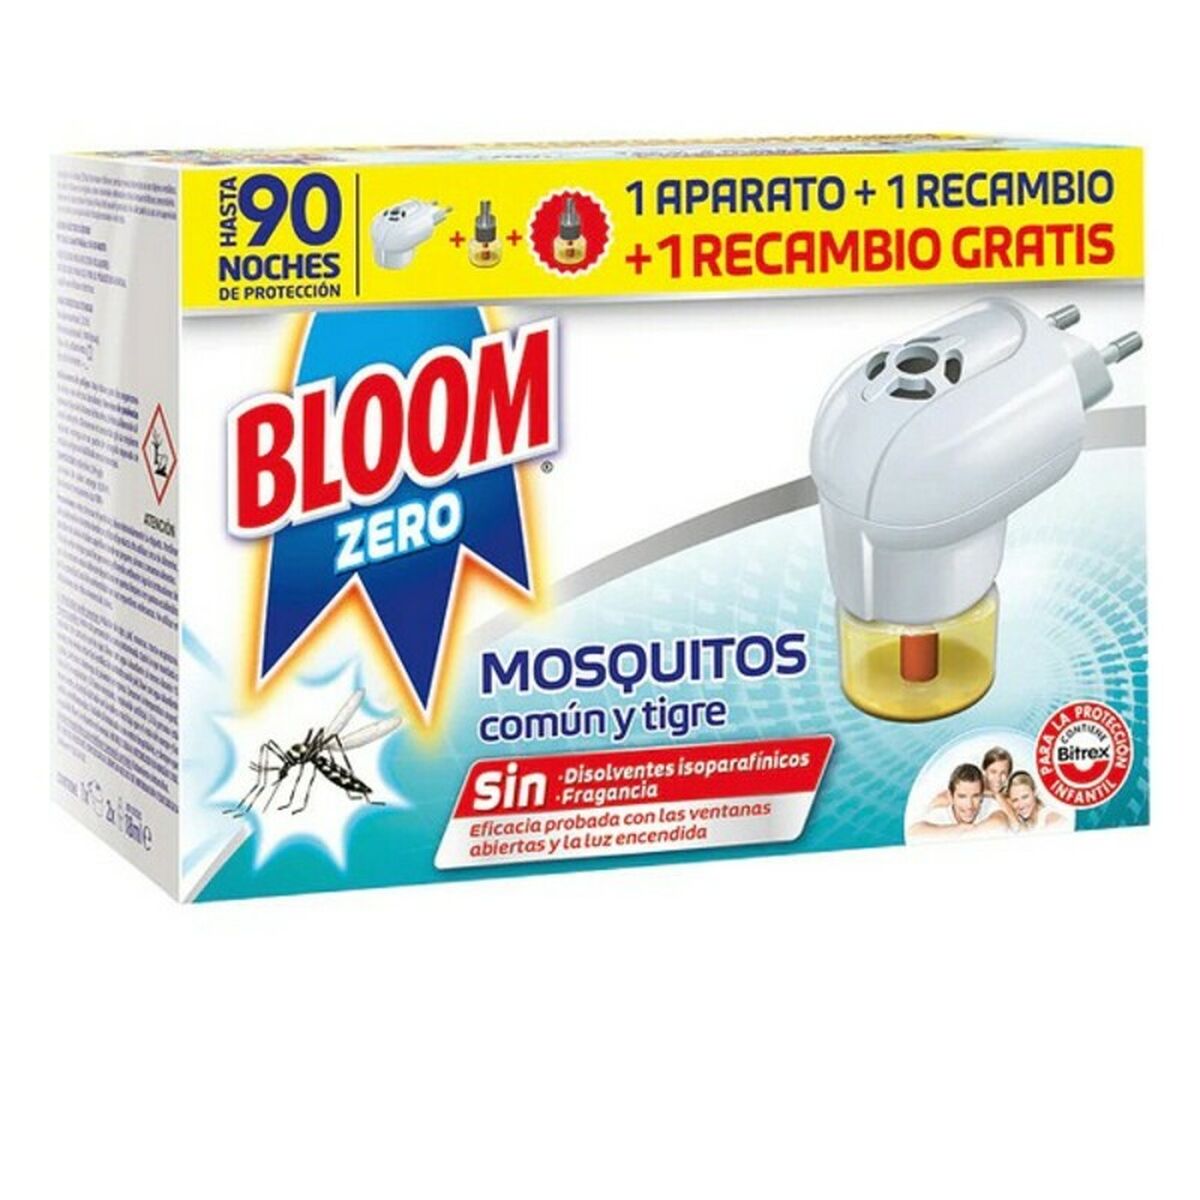 Electric Mosquito Repellent zero Bloom